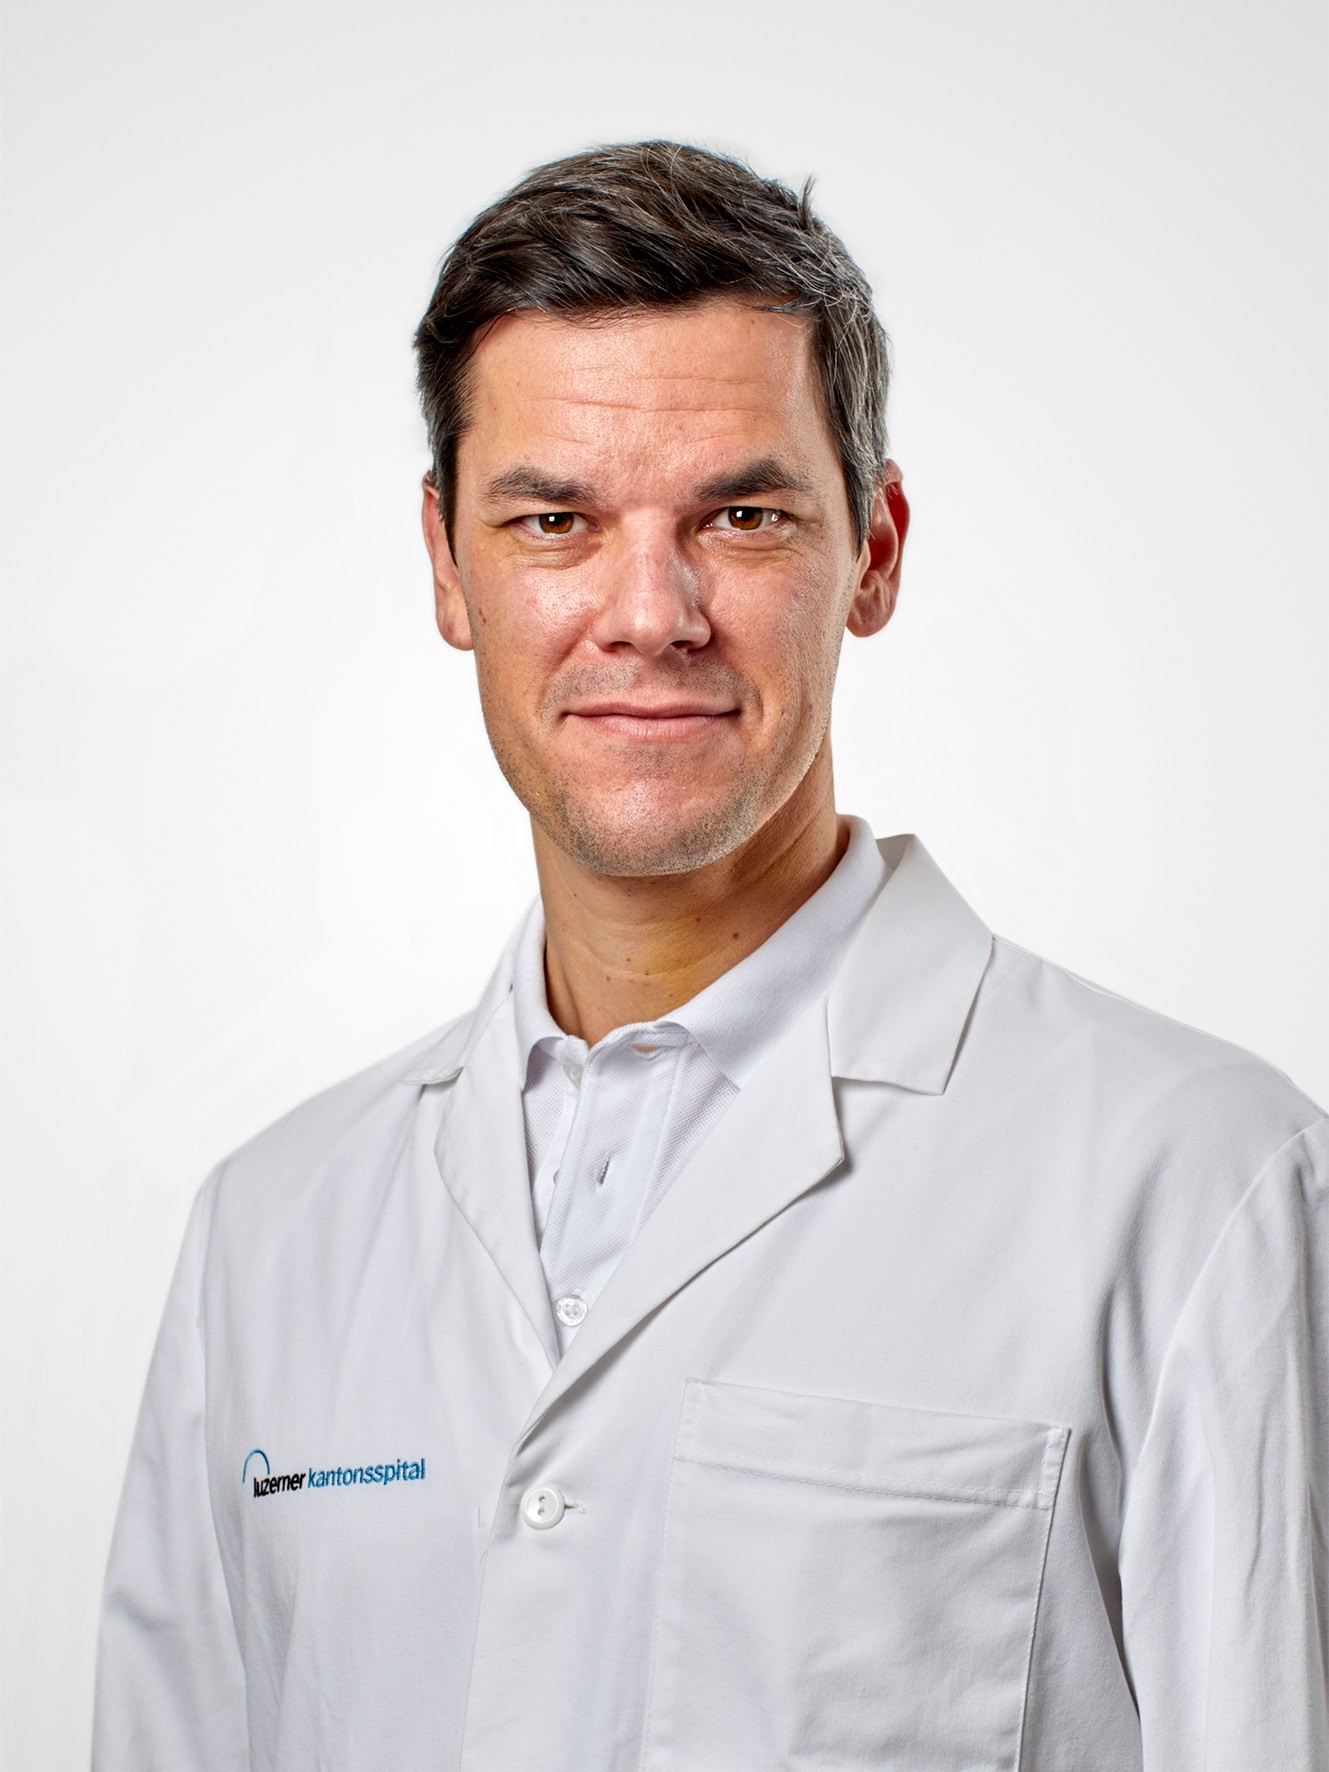 PD Dr. med. Björn-Christian Link ist Chefarzt und Leiter der Klinik für Orthopädie und Unfallchirurgie a.i. am Luzerner Kantonsspital.